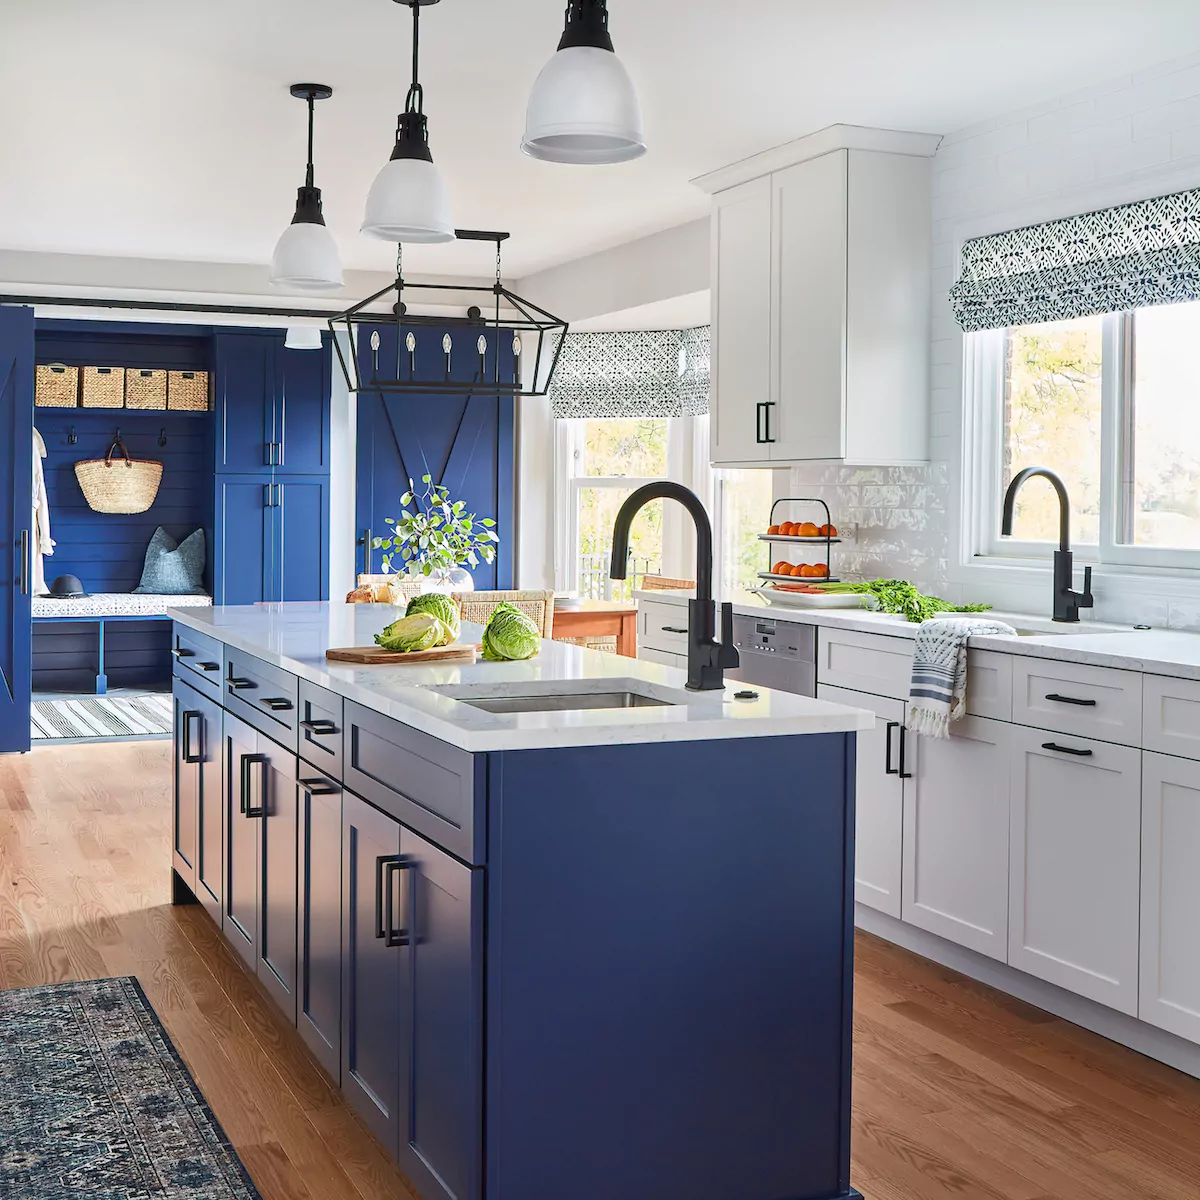 blue-kitchen-island-two-sinks-kitchen-design